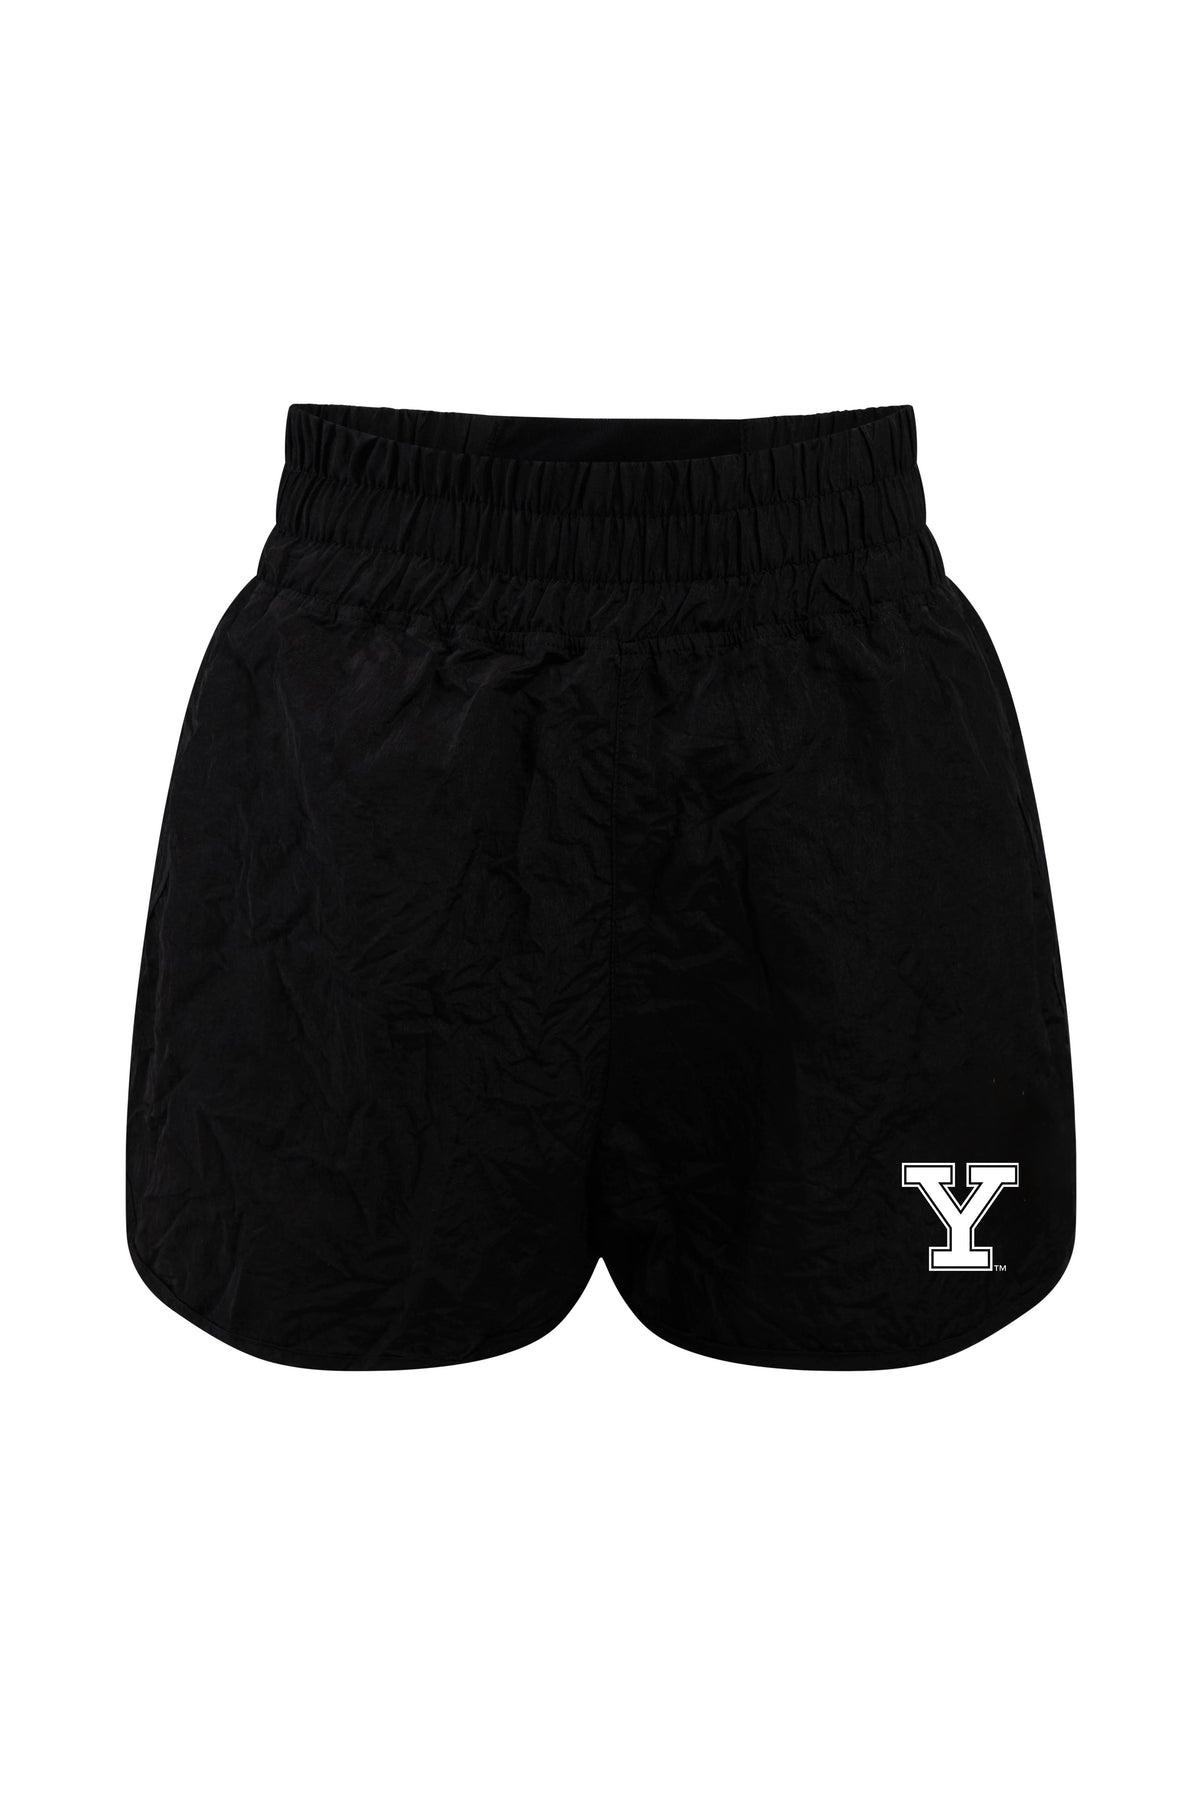 Yale University Boxer Short